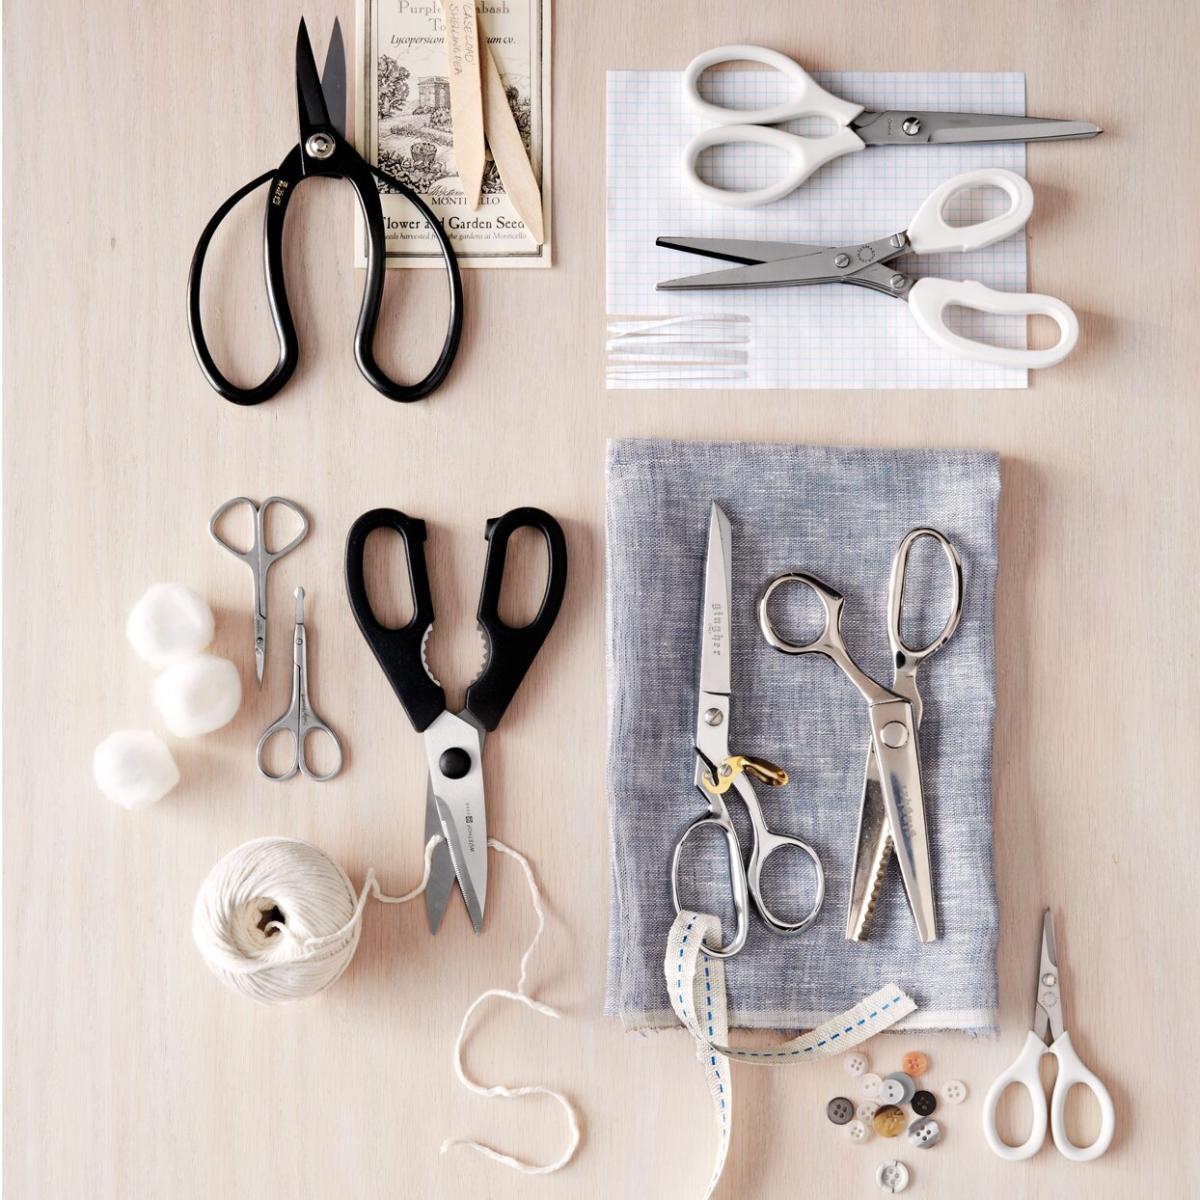 Sewing Scissors, Craft Fabric Scissors, Professional All Purpose